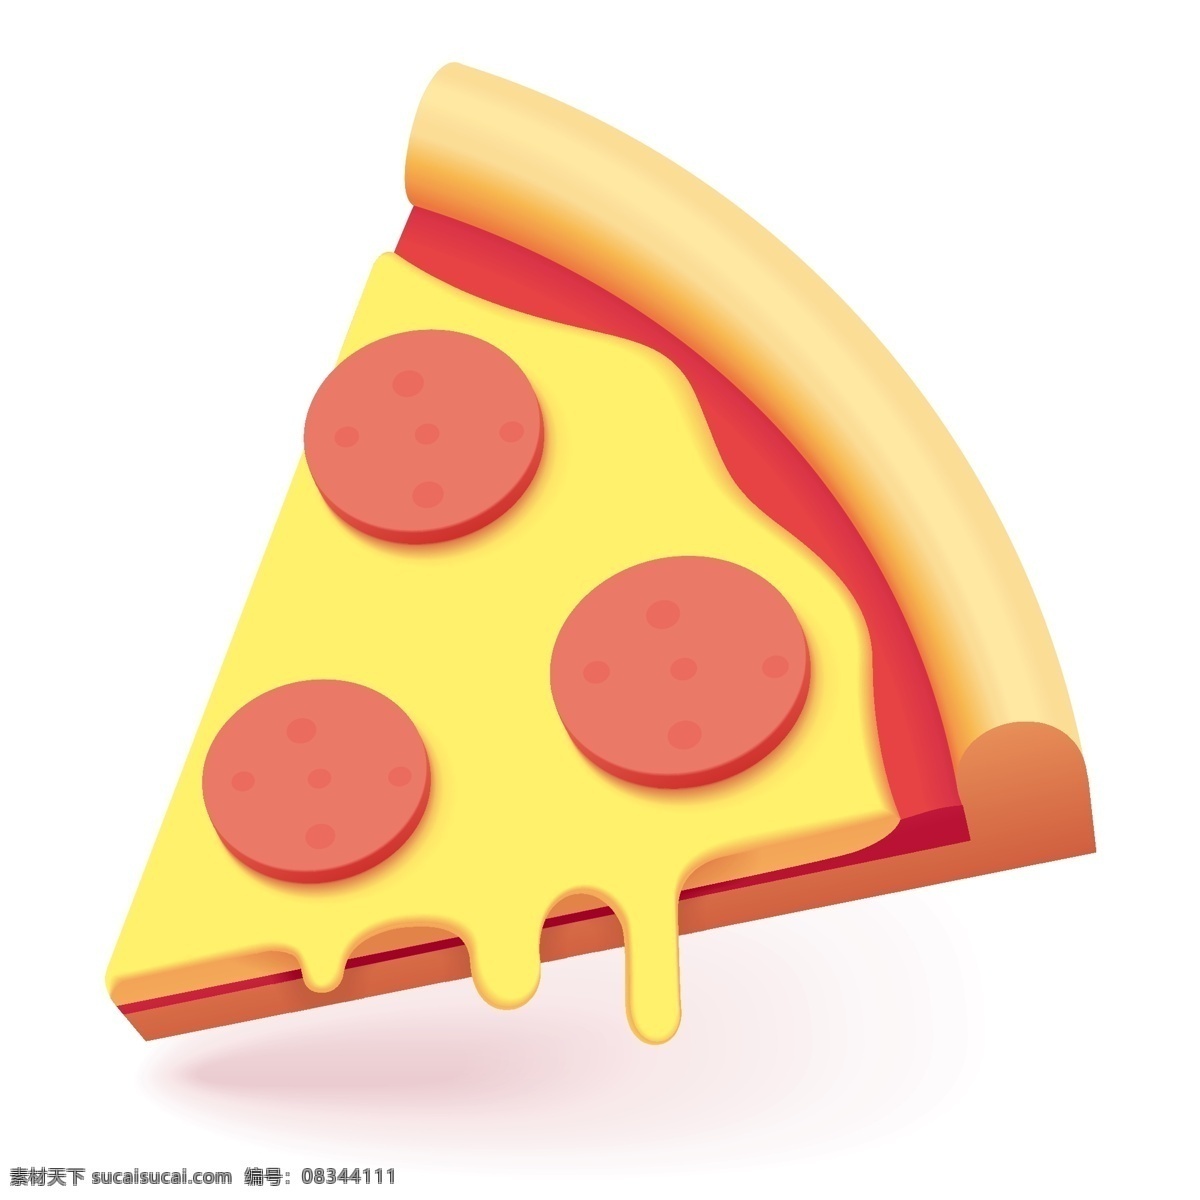 披萨插画 披萨图标 快餐食品图标 小吃图标 食品图标 菜单图标 小吃店图标 标志图标 其他图标